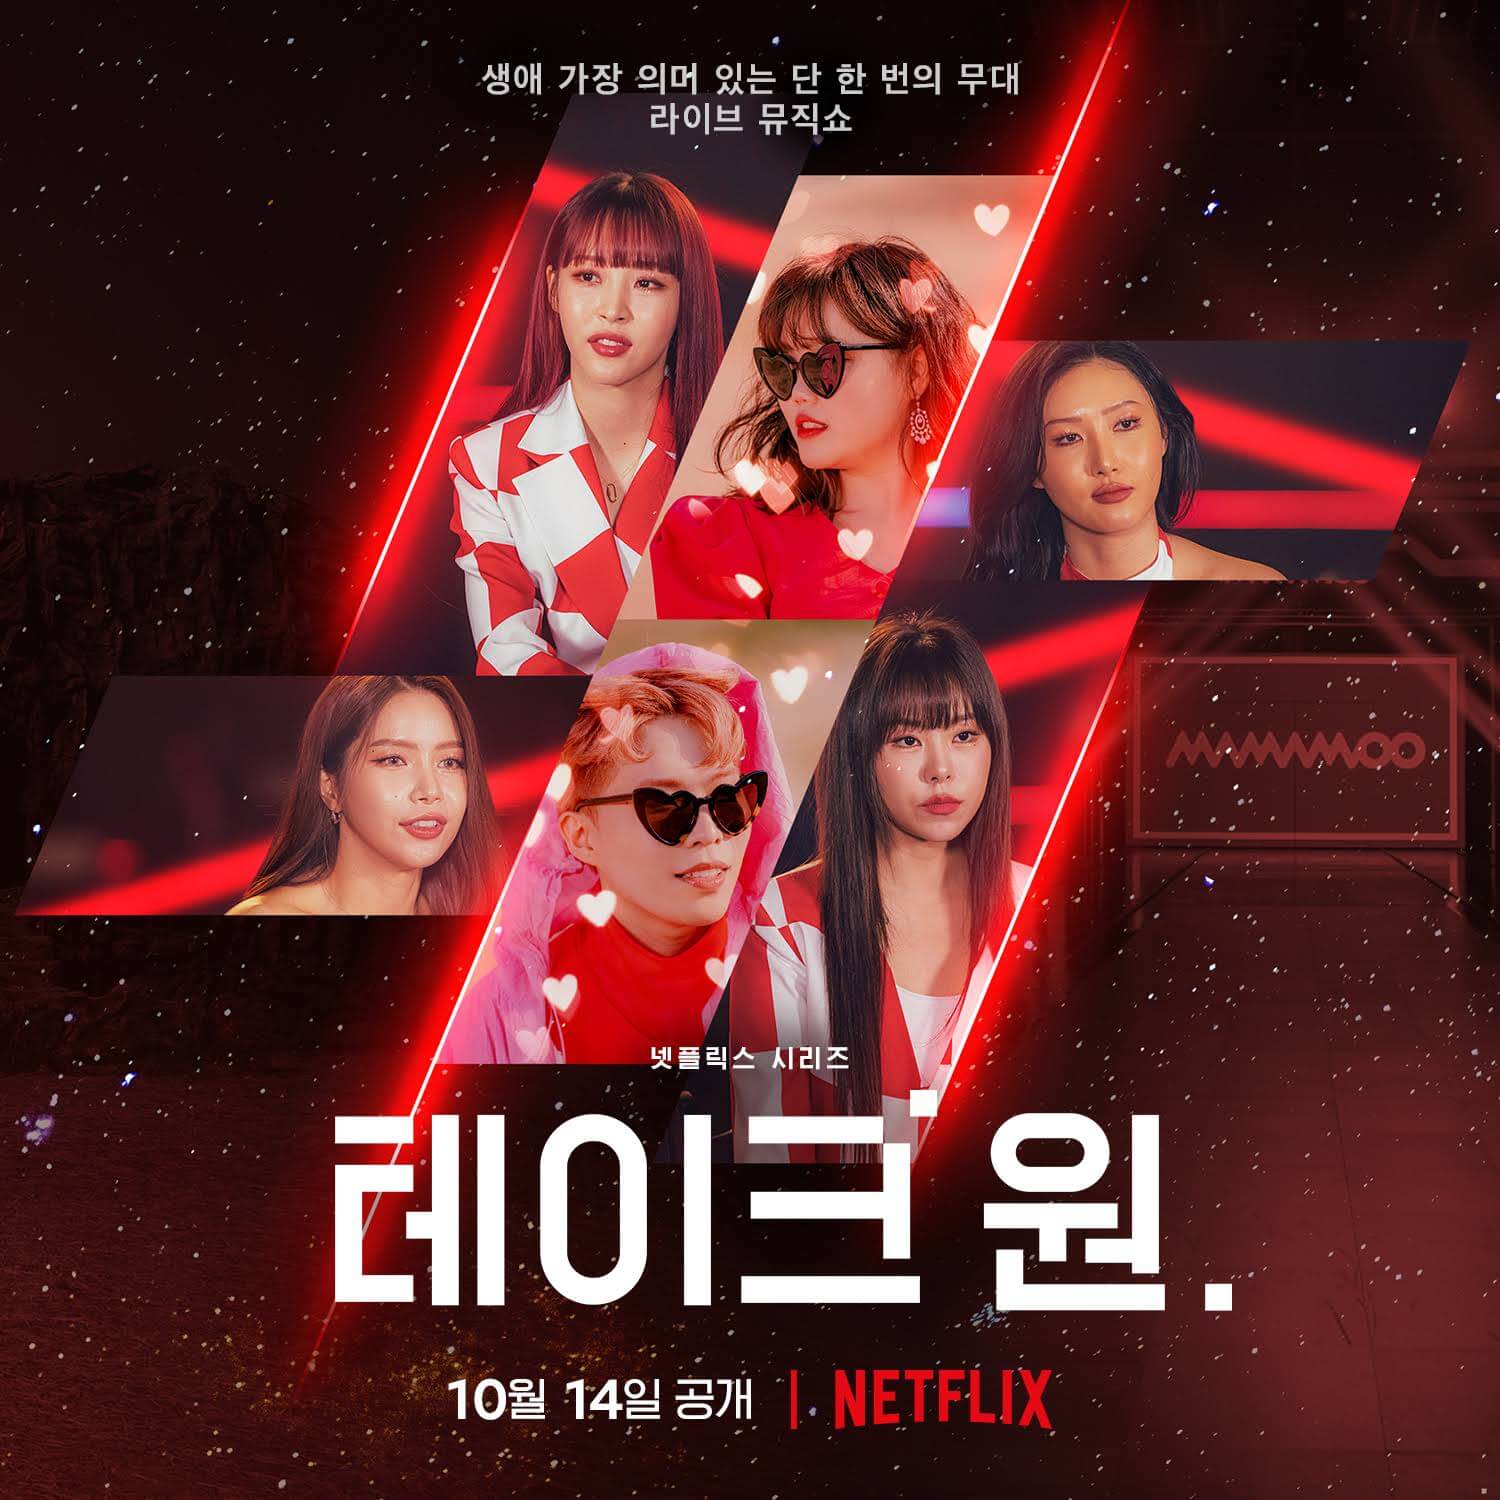 عرض منوعات الموسيقى الكورية يأخذ 1 قادمًا إلى Netflix في ملصق 2 أكتوبر 2022